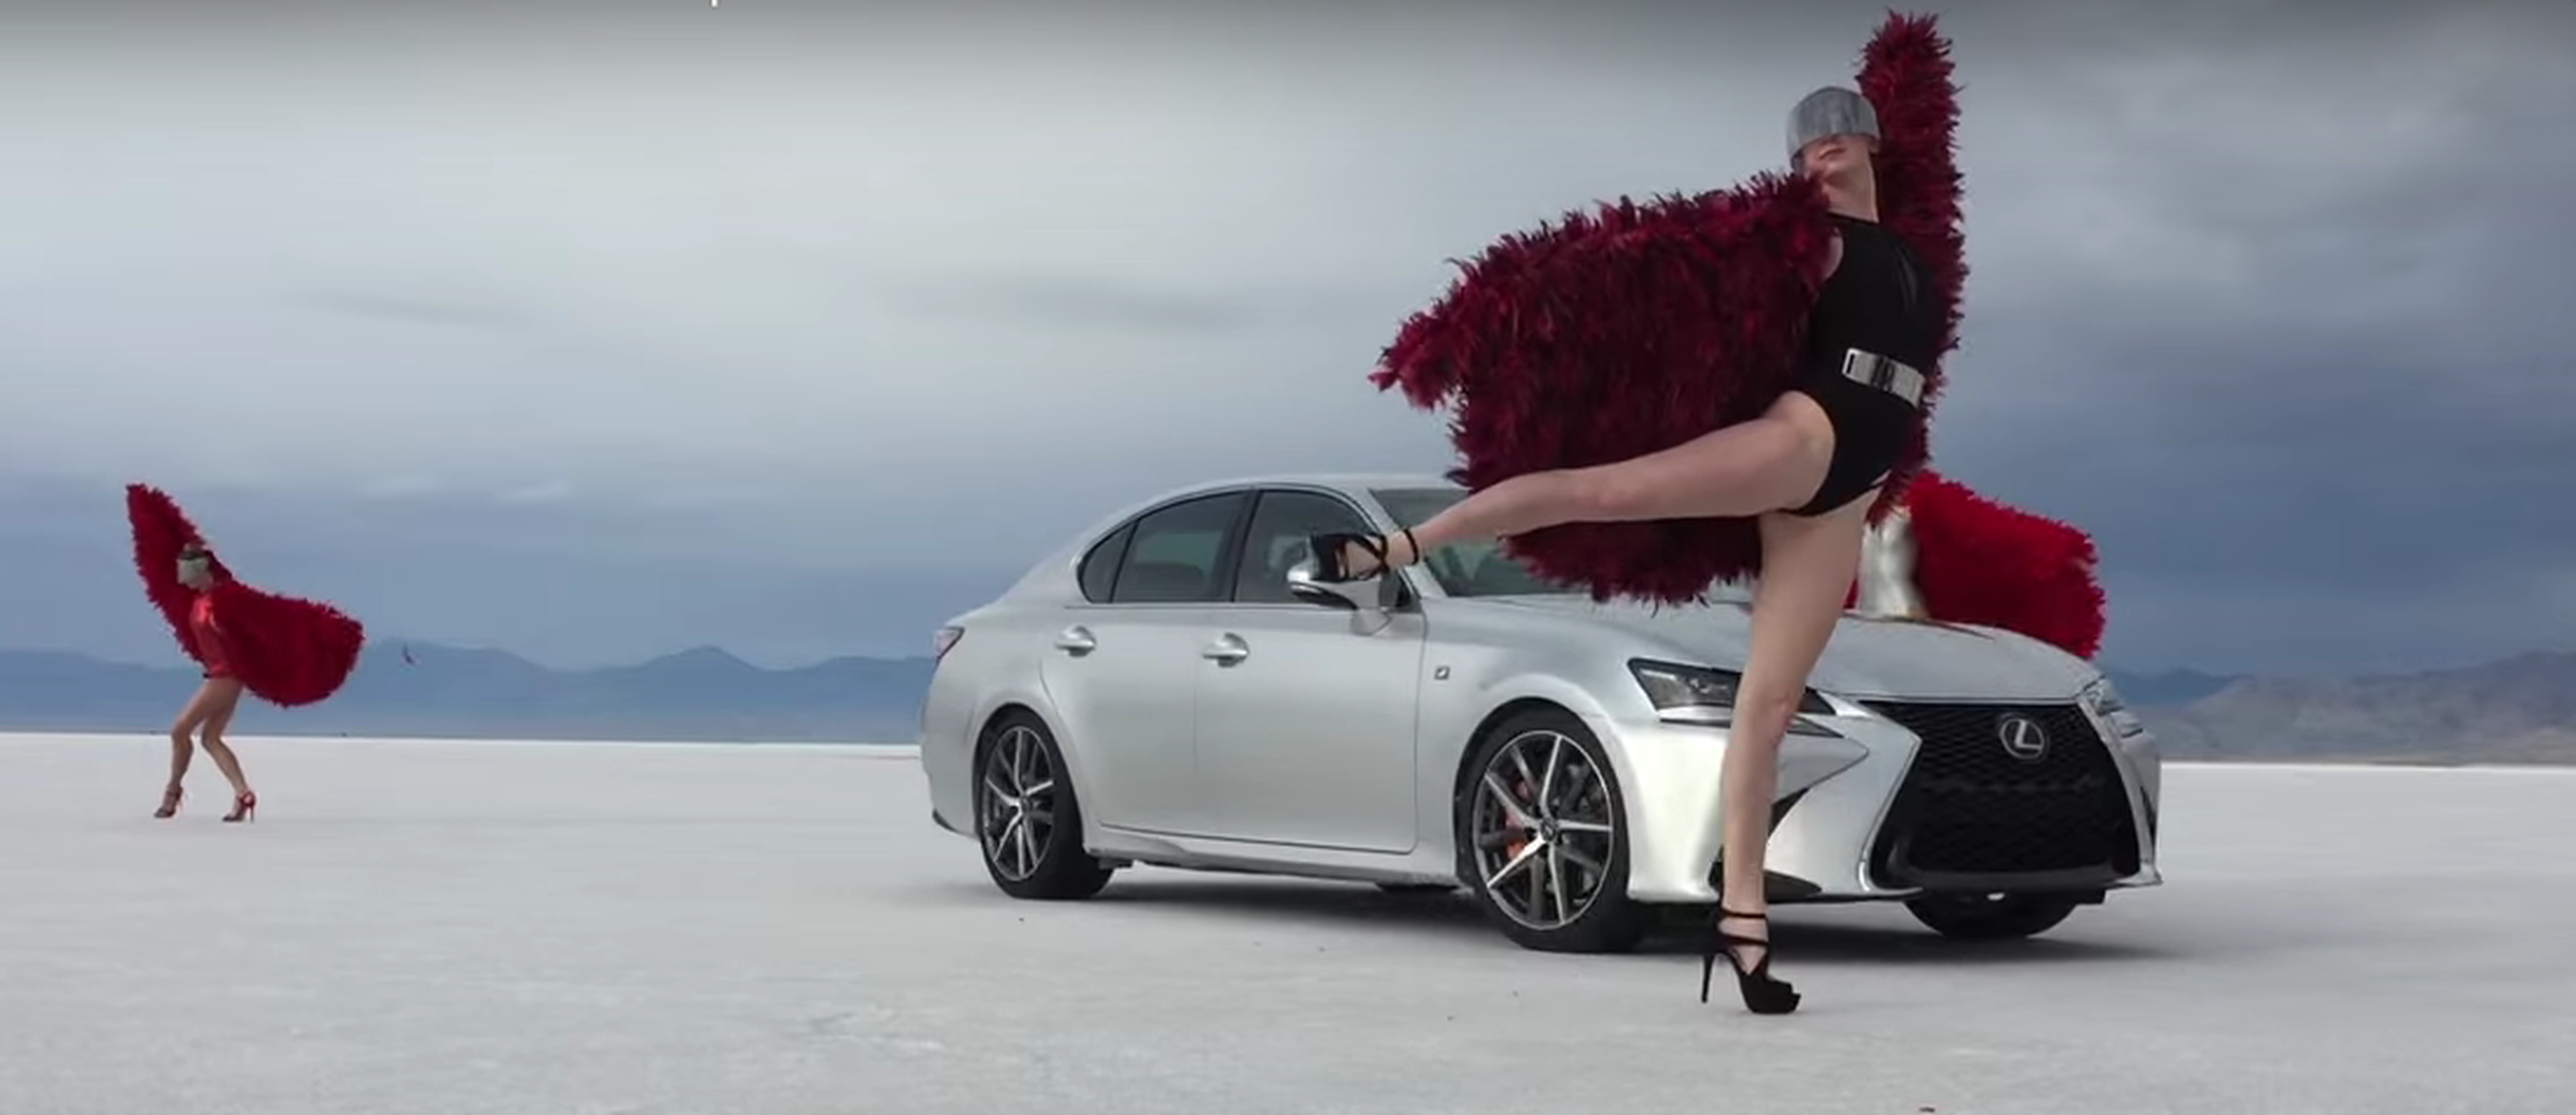 ¡Entre colores y hielo! Así se rodó el anuncio del Lexus GS